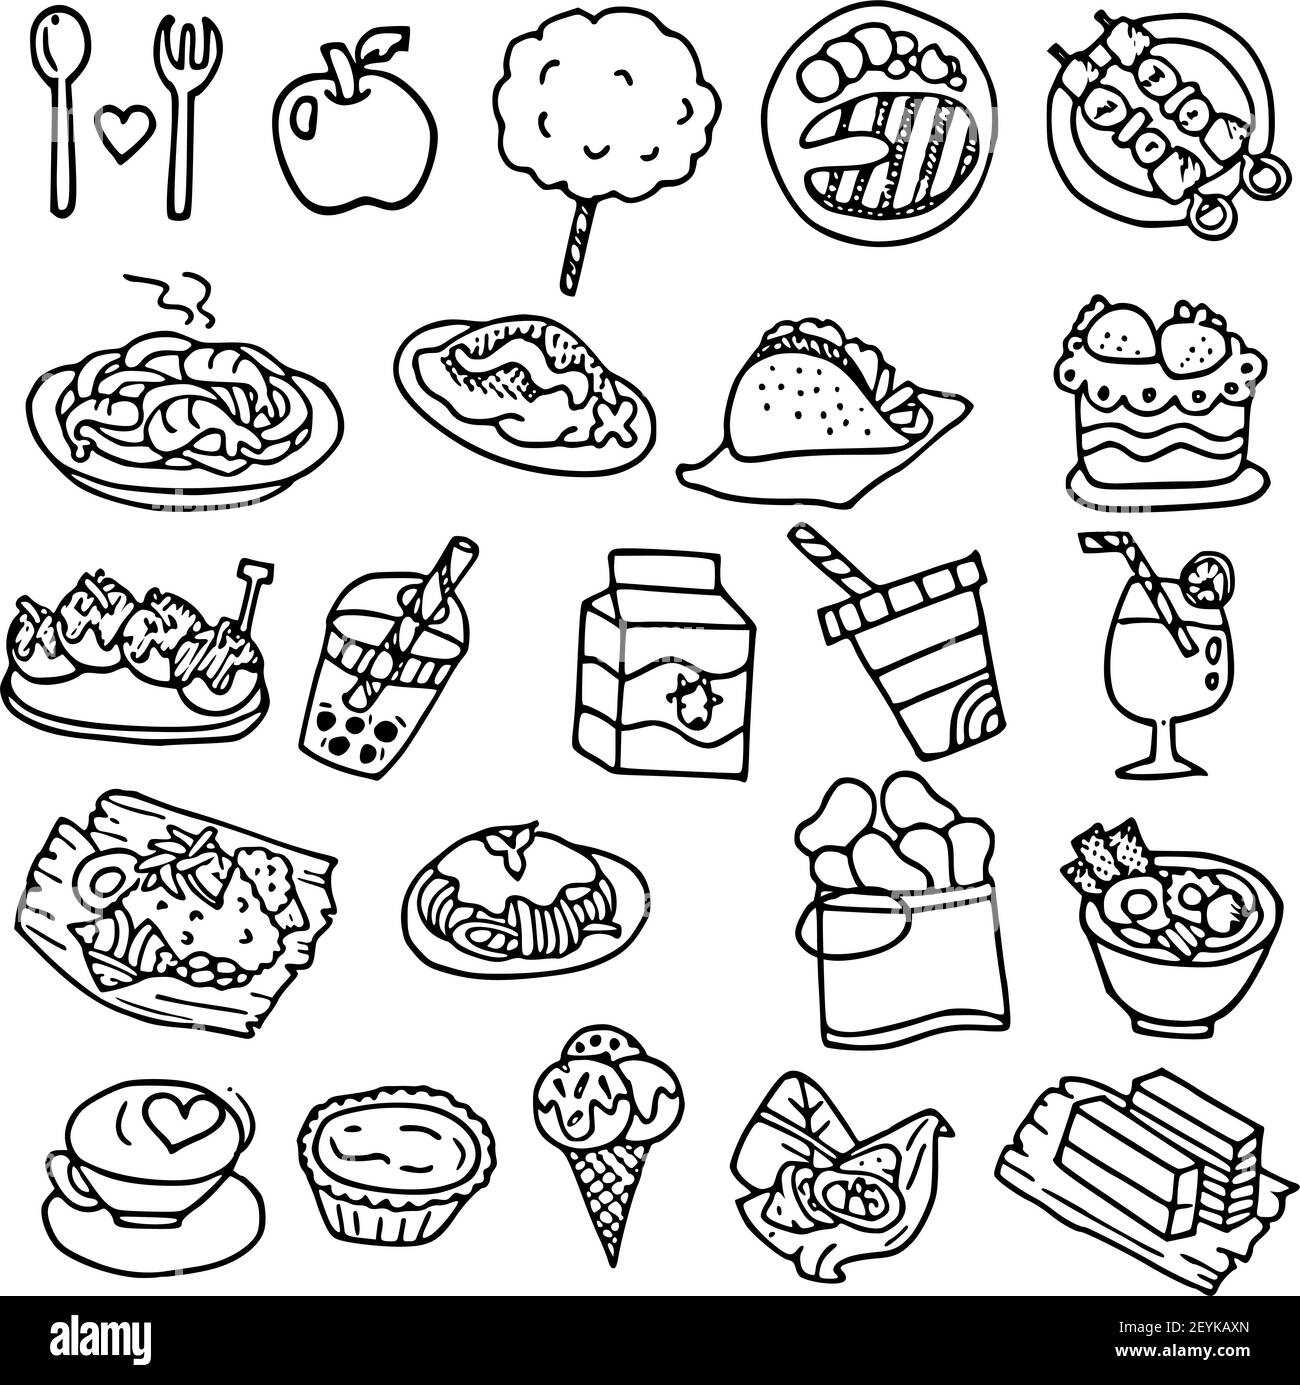 Chọn lọc 87+ hình ảnh food background cartoon - thpthoangvanthu.edu.vn